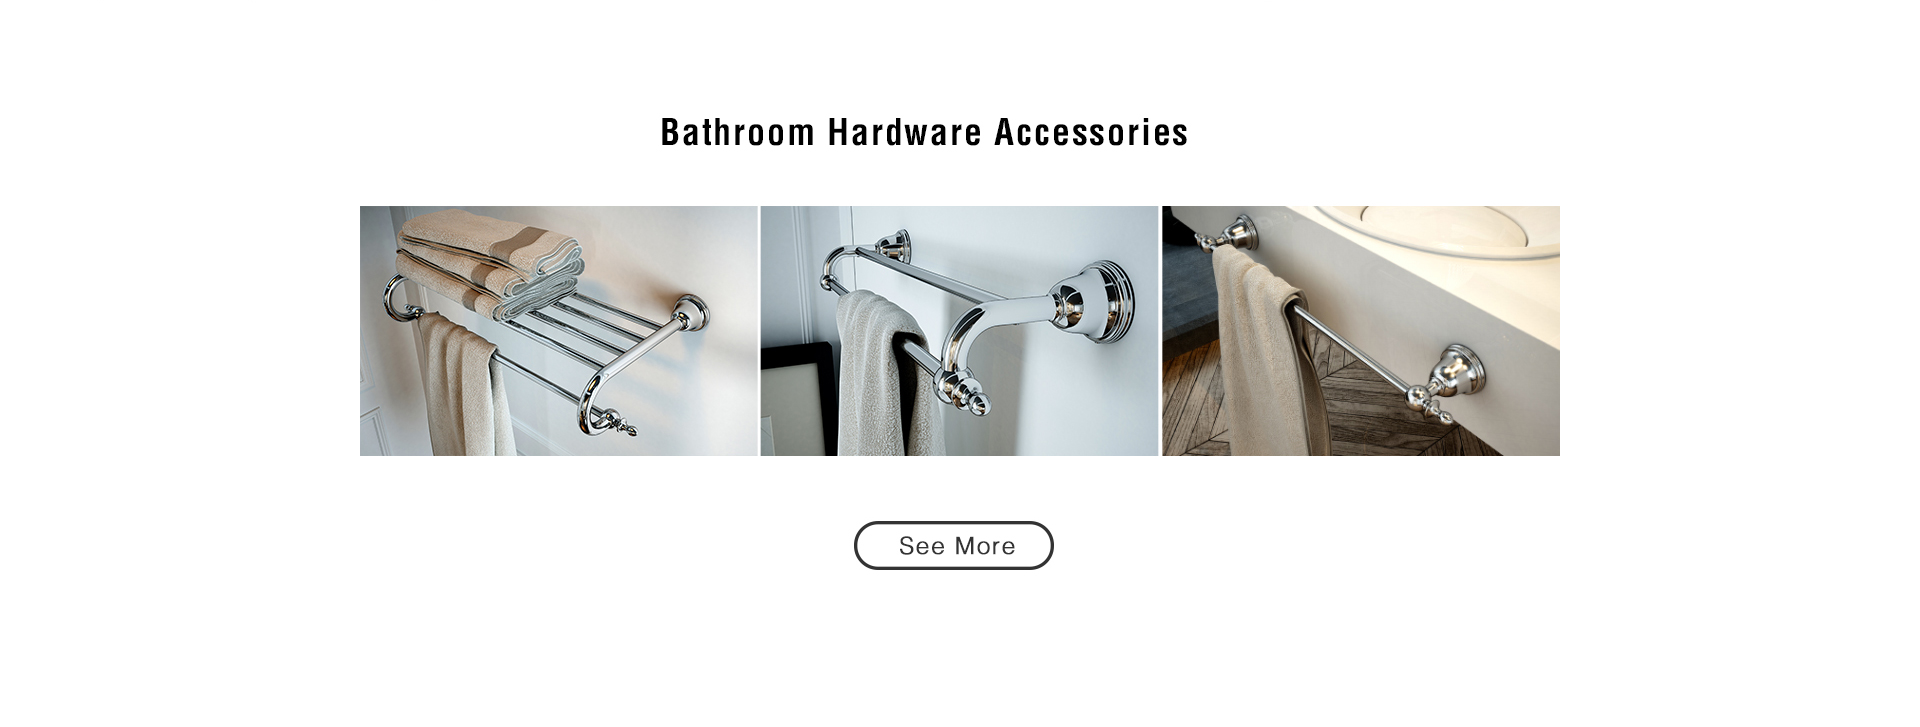 6.HIMARK Phoenix bathroom accessories 